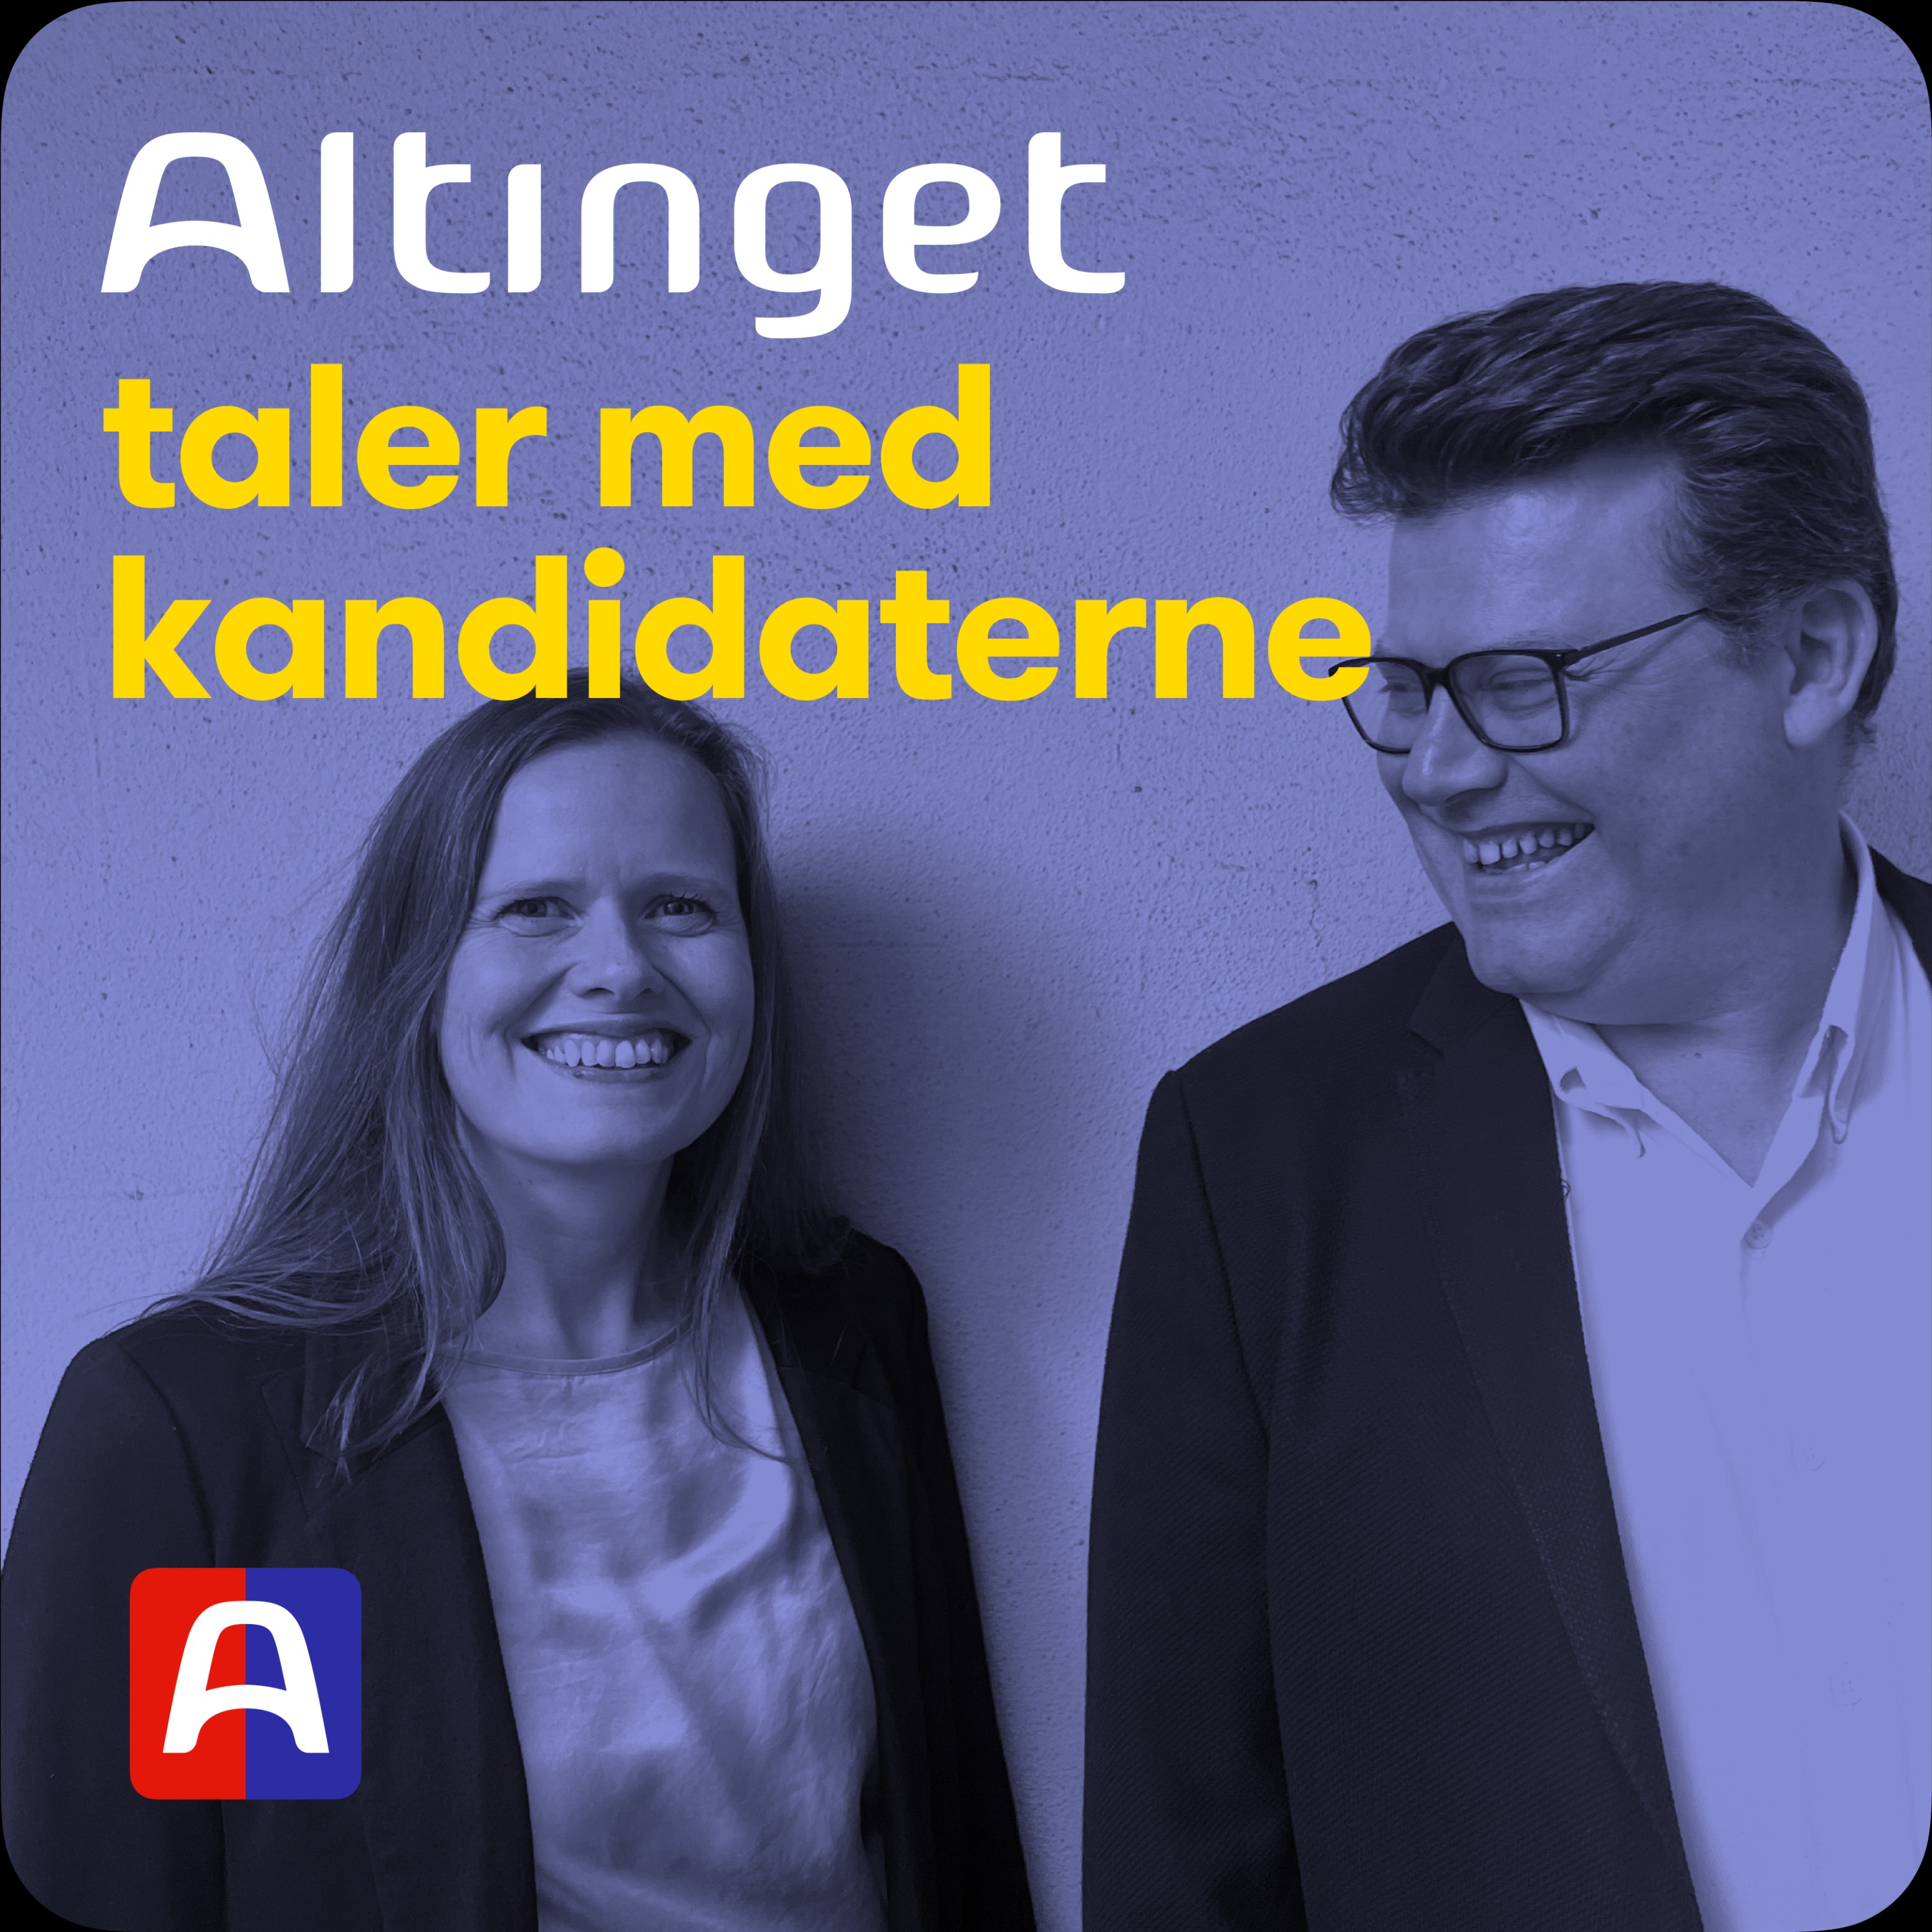 Altinget taler med kandidaterne: Støjbergs kandidat vil bremse illegal indvandring